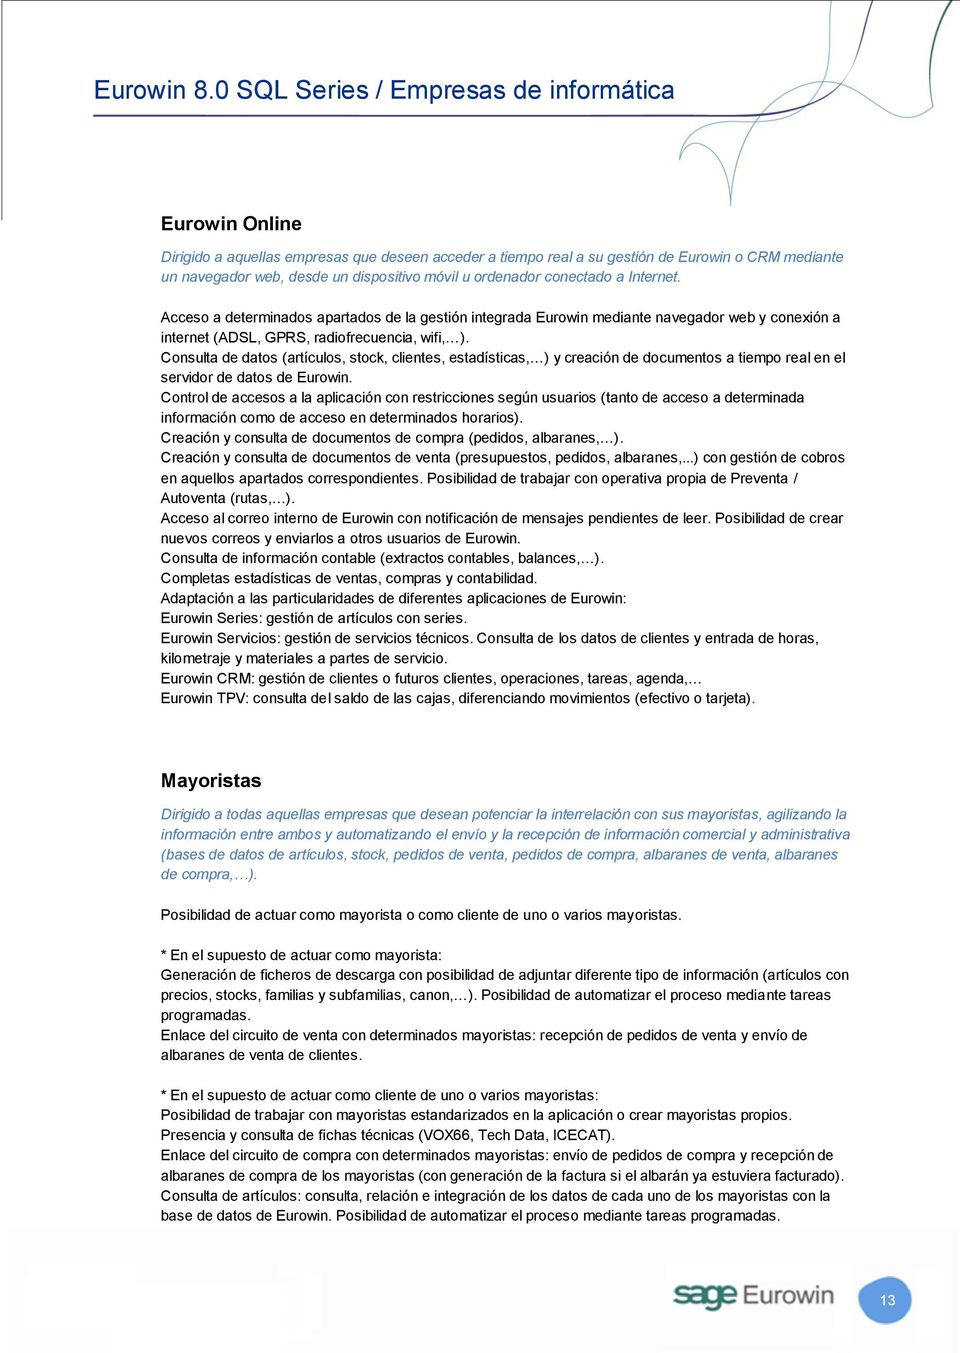 Consulta de datos (artículos, stock, clientes, estadísticas, ) y creación de documentos a tiempo real en el servidor de datos de Eurowin.